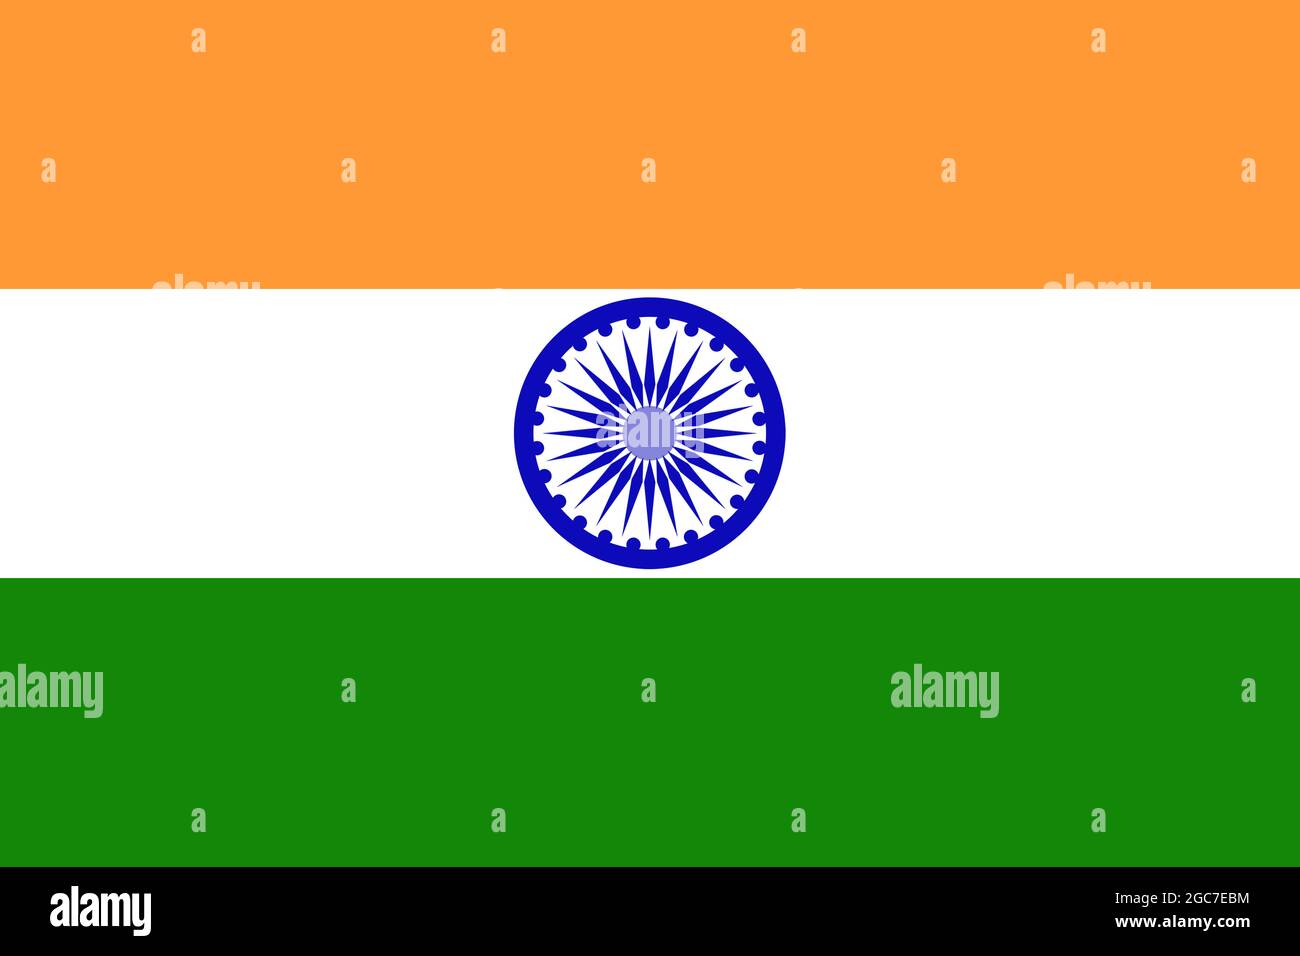 Bandiera dell'India, colori ufficiali e proporzione corretta. Bandiera nazionale dell'India. Foto Stock